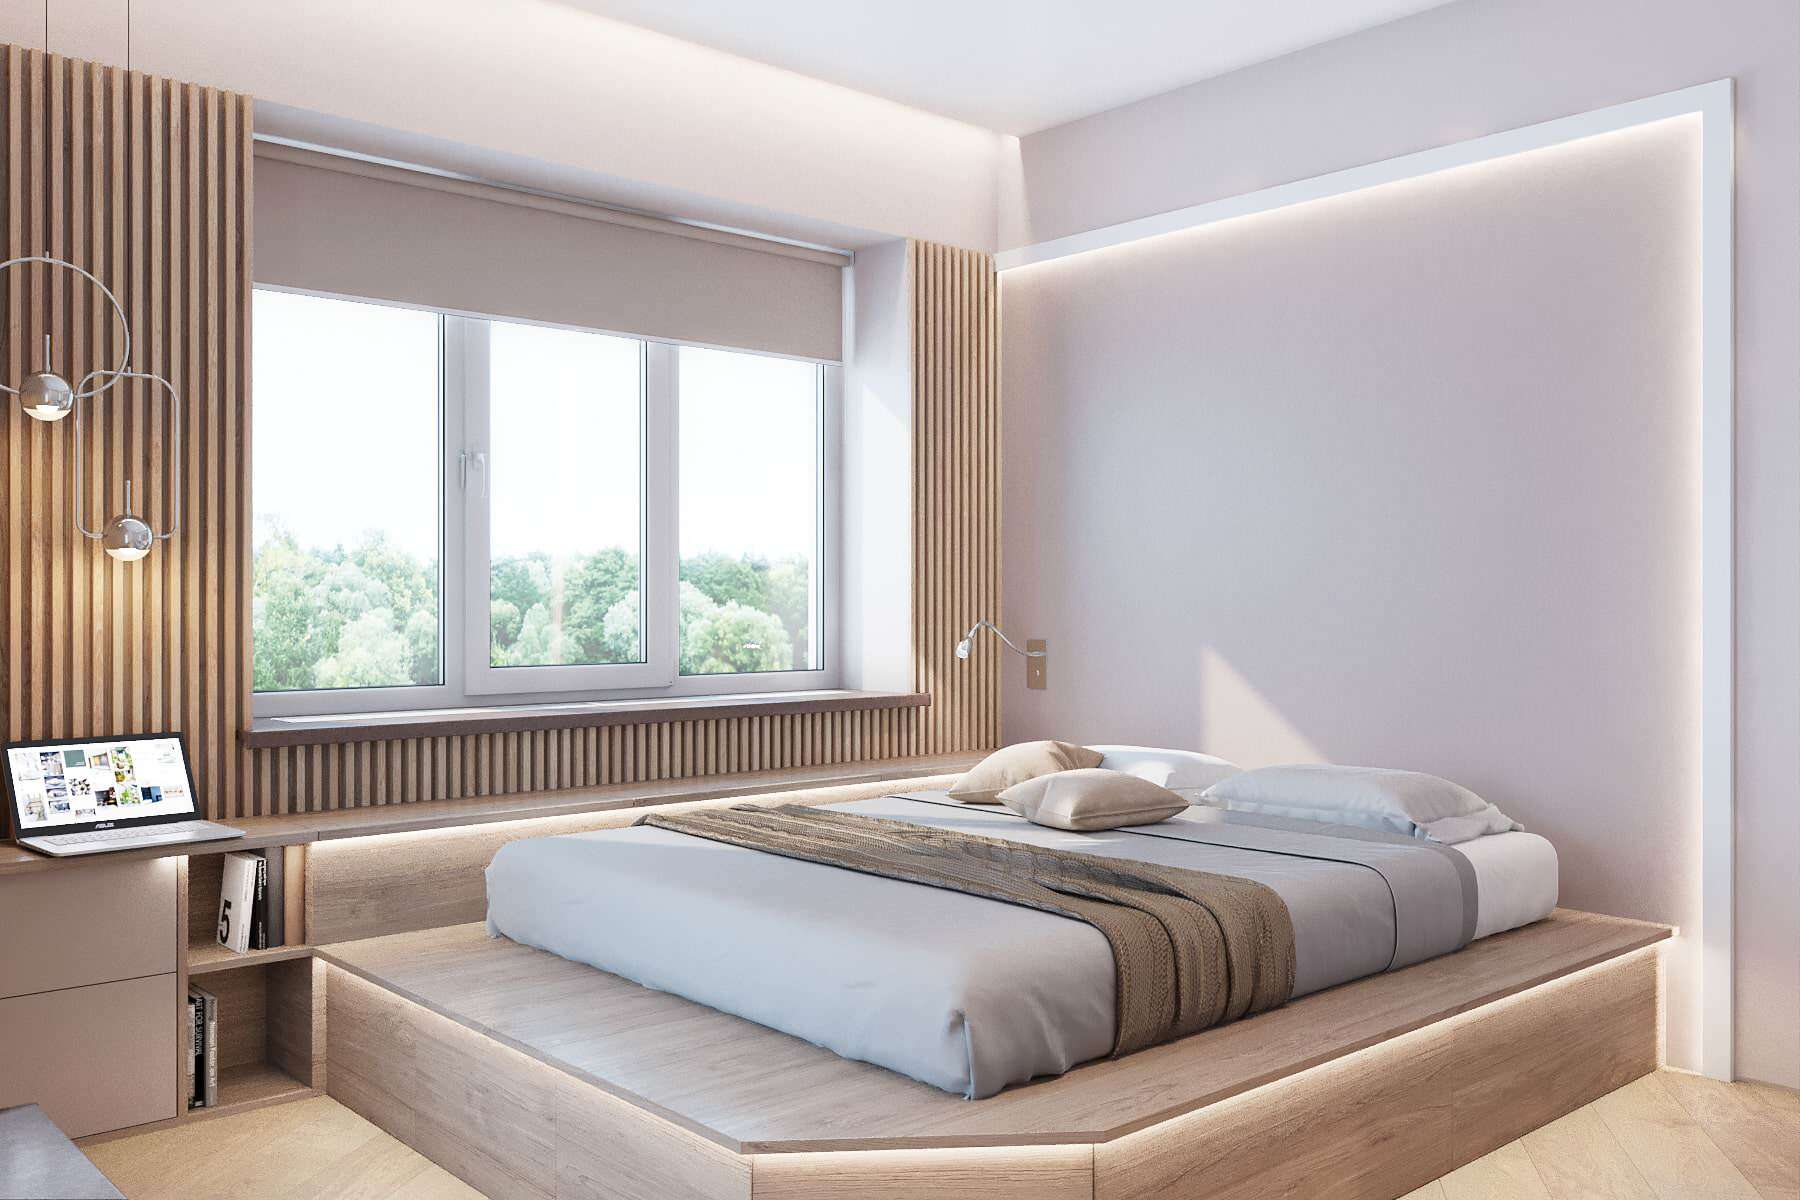 Интерьер спальни cветовыми линиями, рейками с подсветкой и подсветкой настенной в современном стиле